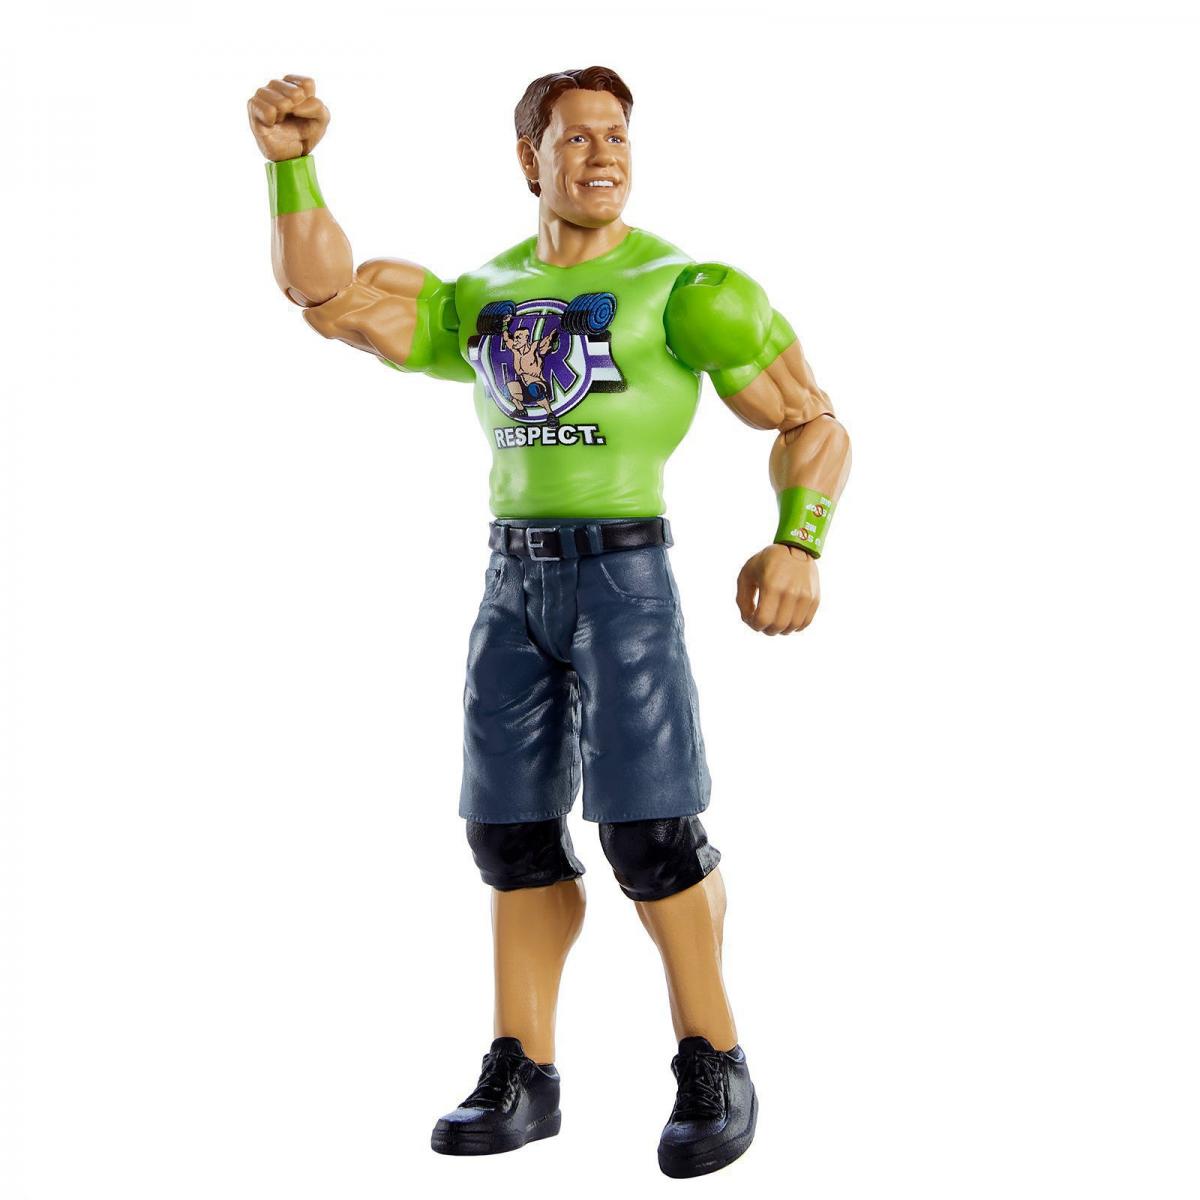 2020 WWE Mattel Basic Series 110 John Cena